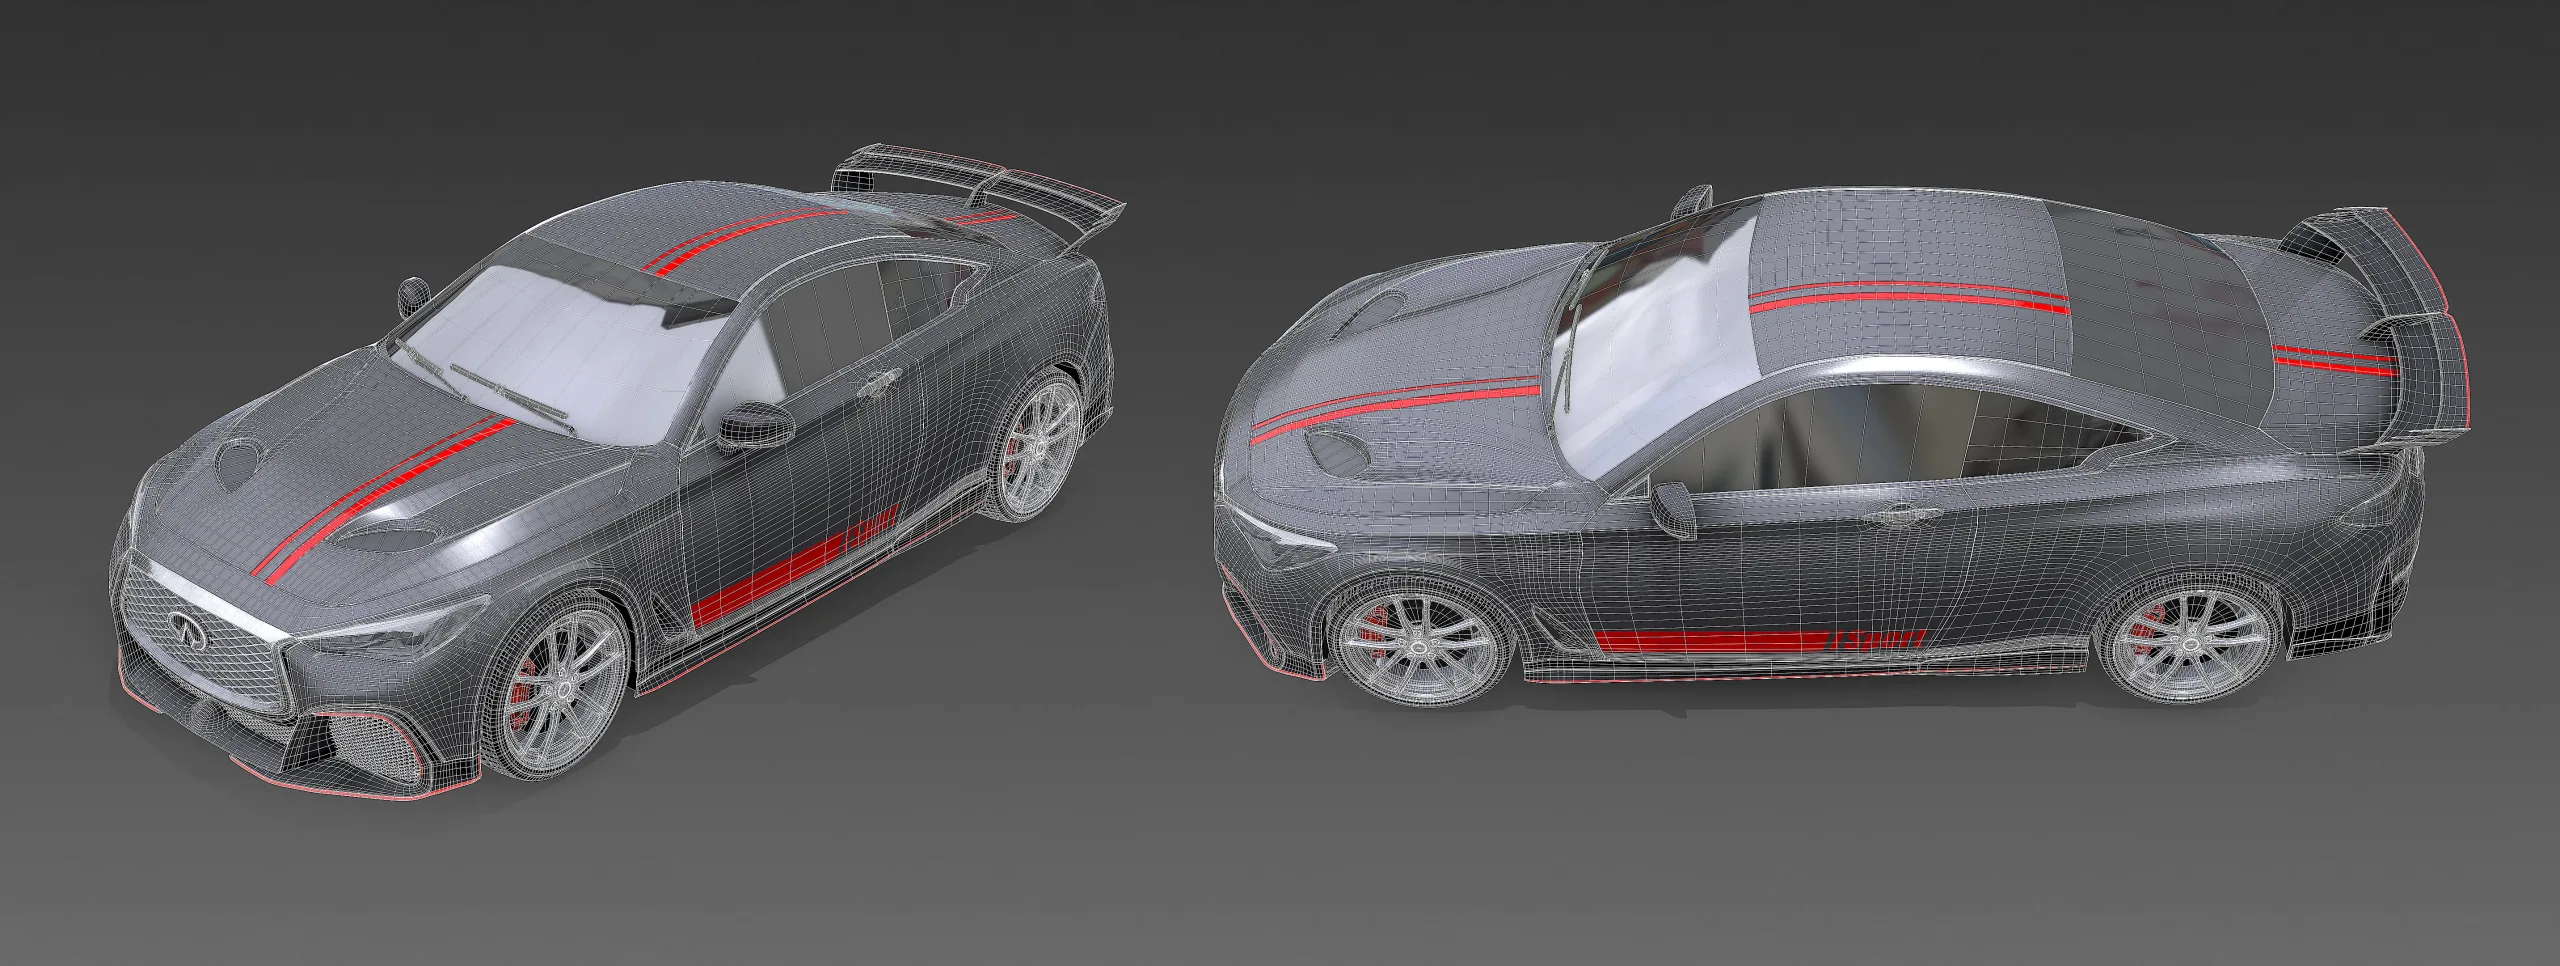 Vehicle Modeling Course - Autodesk Maya